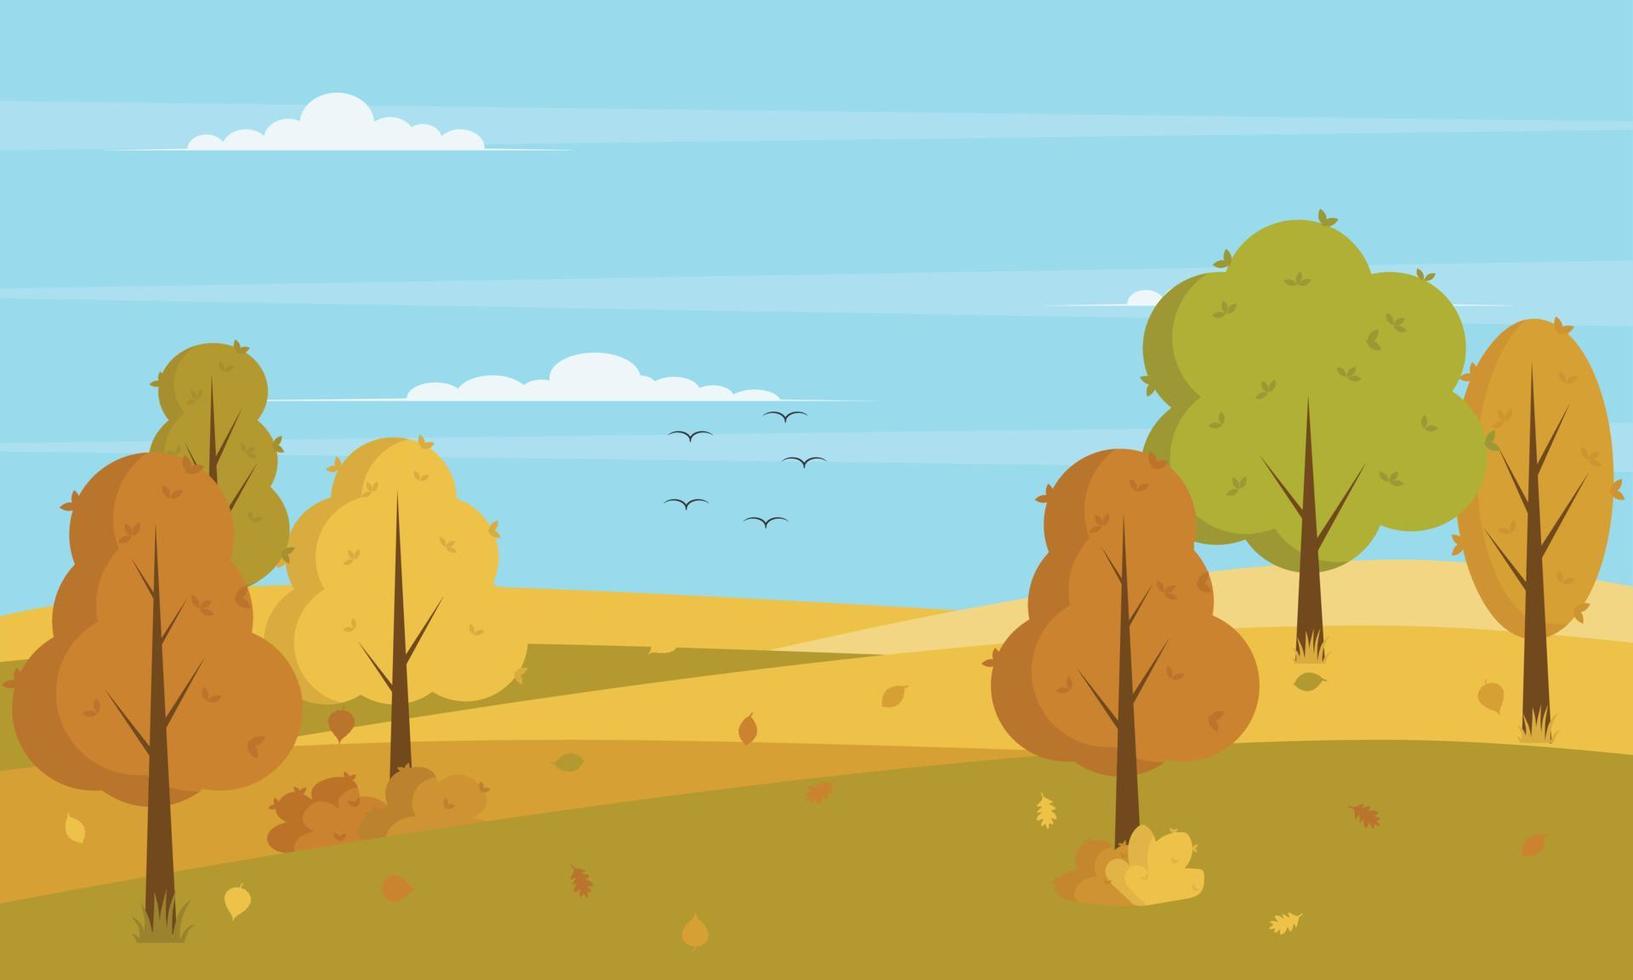 panorâmica da paisagem rural no outono com folhas caídas na grama, ilustração vetorial de banner horizontal de montanhas de paisagem de outono e árvores de bordo com folhagem amarela na temporada de outono. vetor